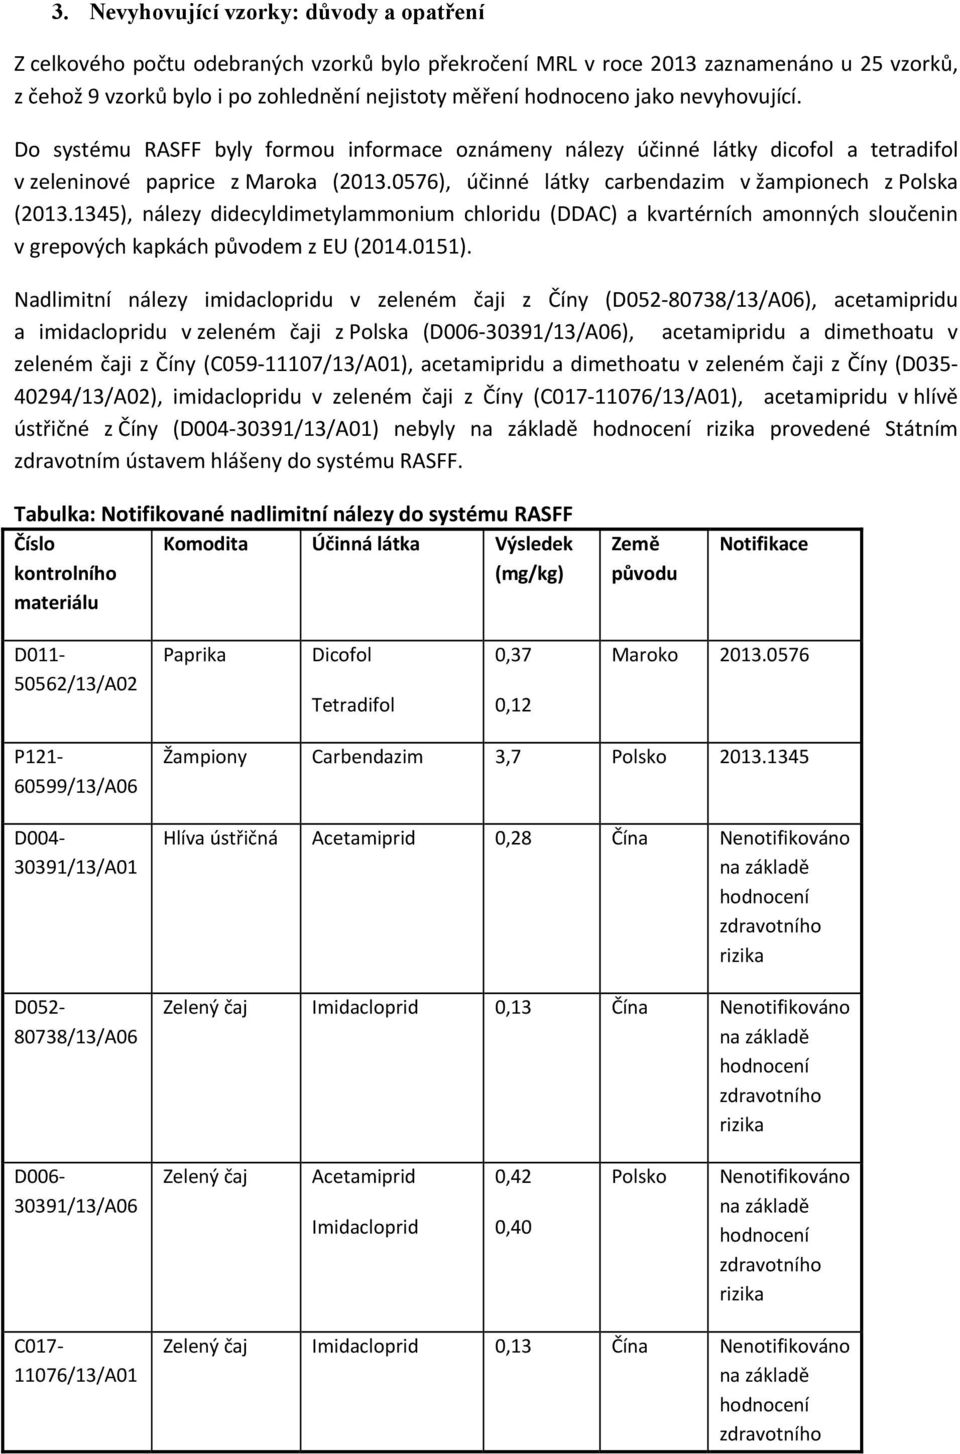 0576), účinné látky carbendazim v žampionech z Polska (2013.1345), nálezy didecyldimetylammonium chloridu (DDAC) a kvartérních amonných sloučenin v grepových kapkách původem z EU (2014.0151).